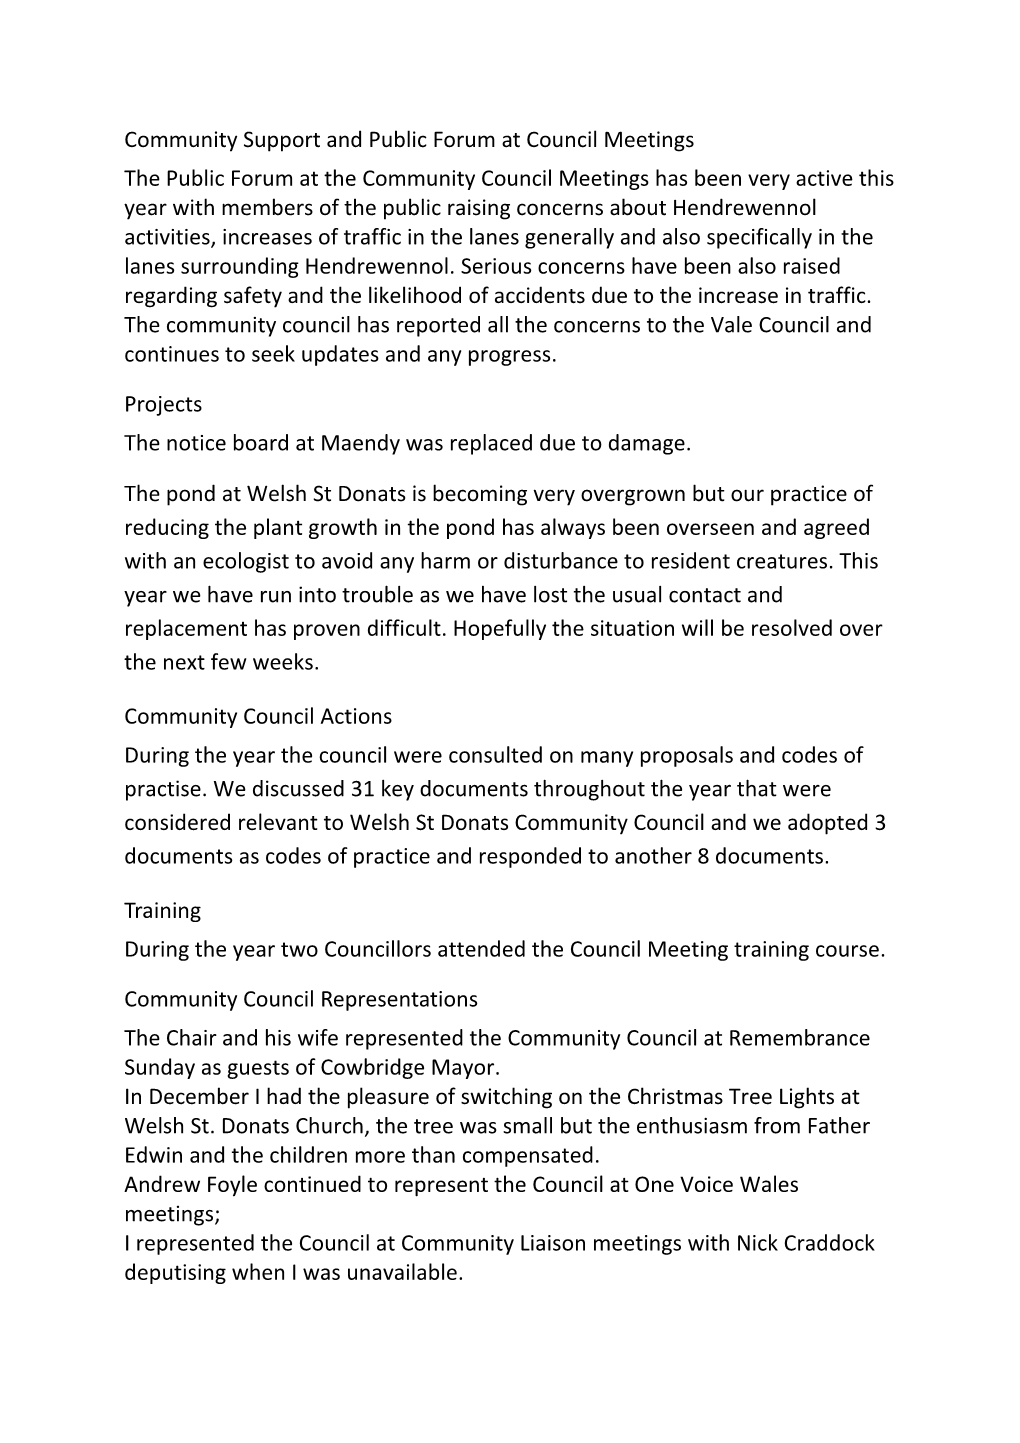 Welsh St Donats Community Council